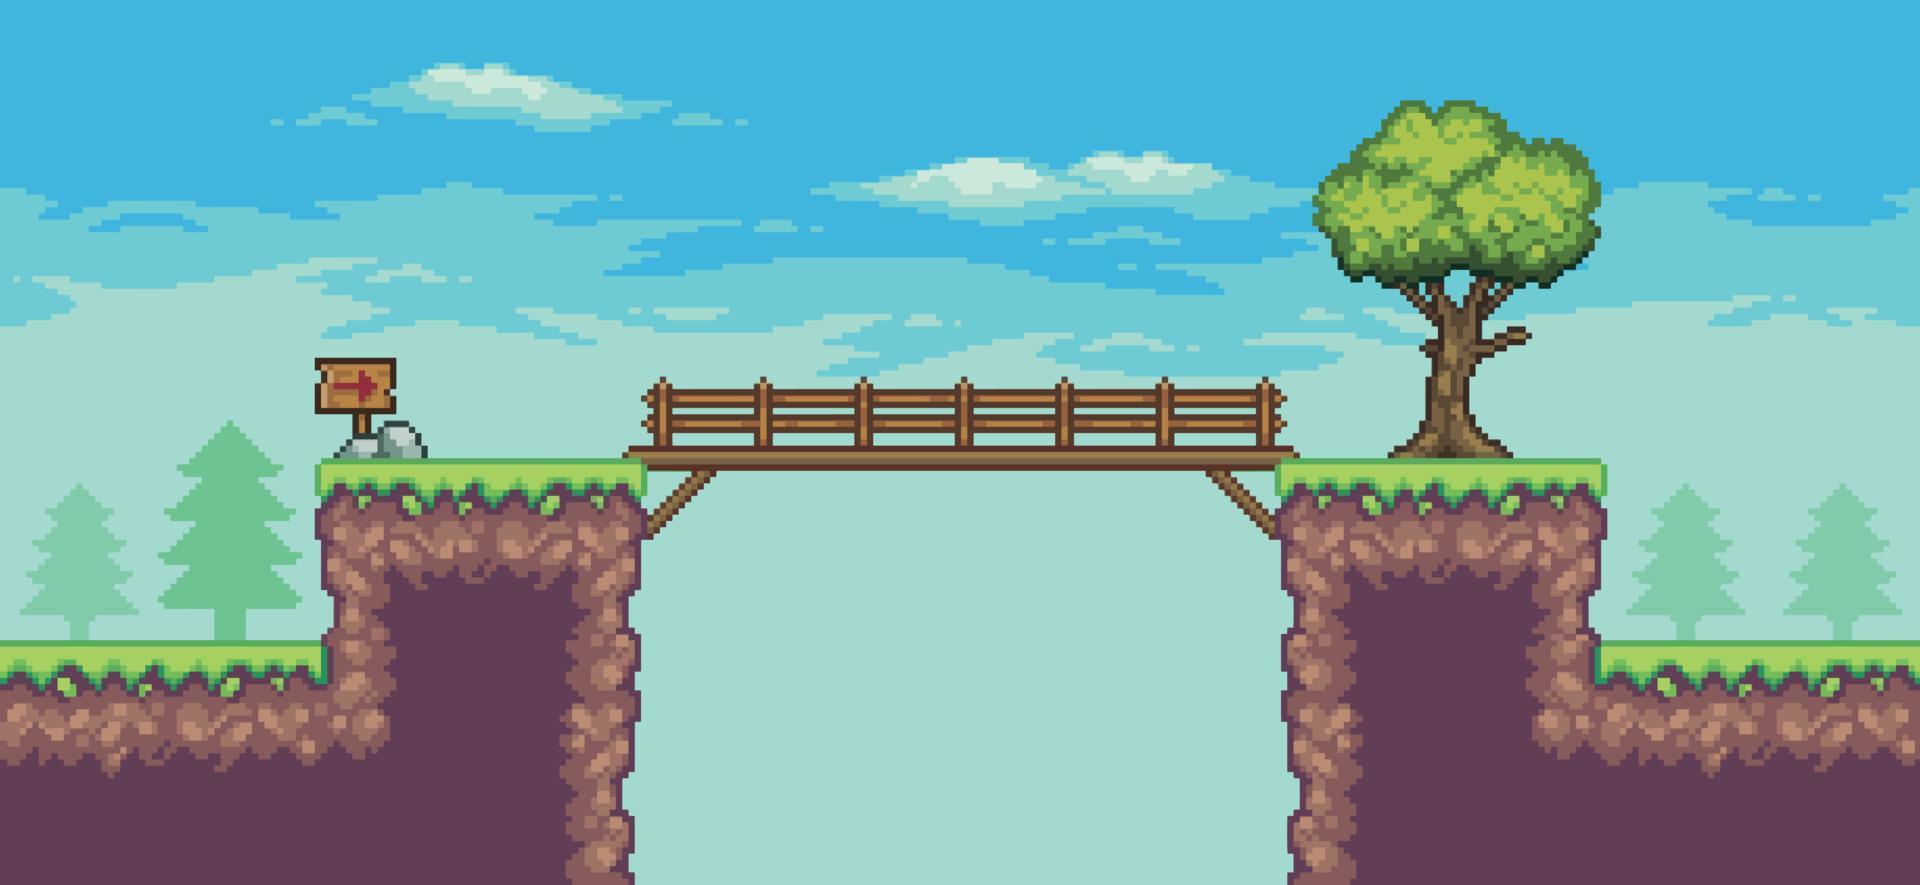 scena di gioco arcade pixel art con albero, ponte, tavola di legno e nuvole sfondo vettoriale a 8 bit